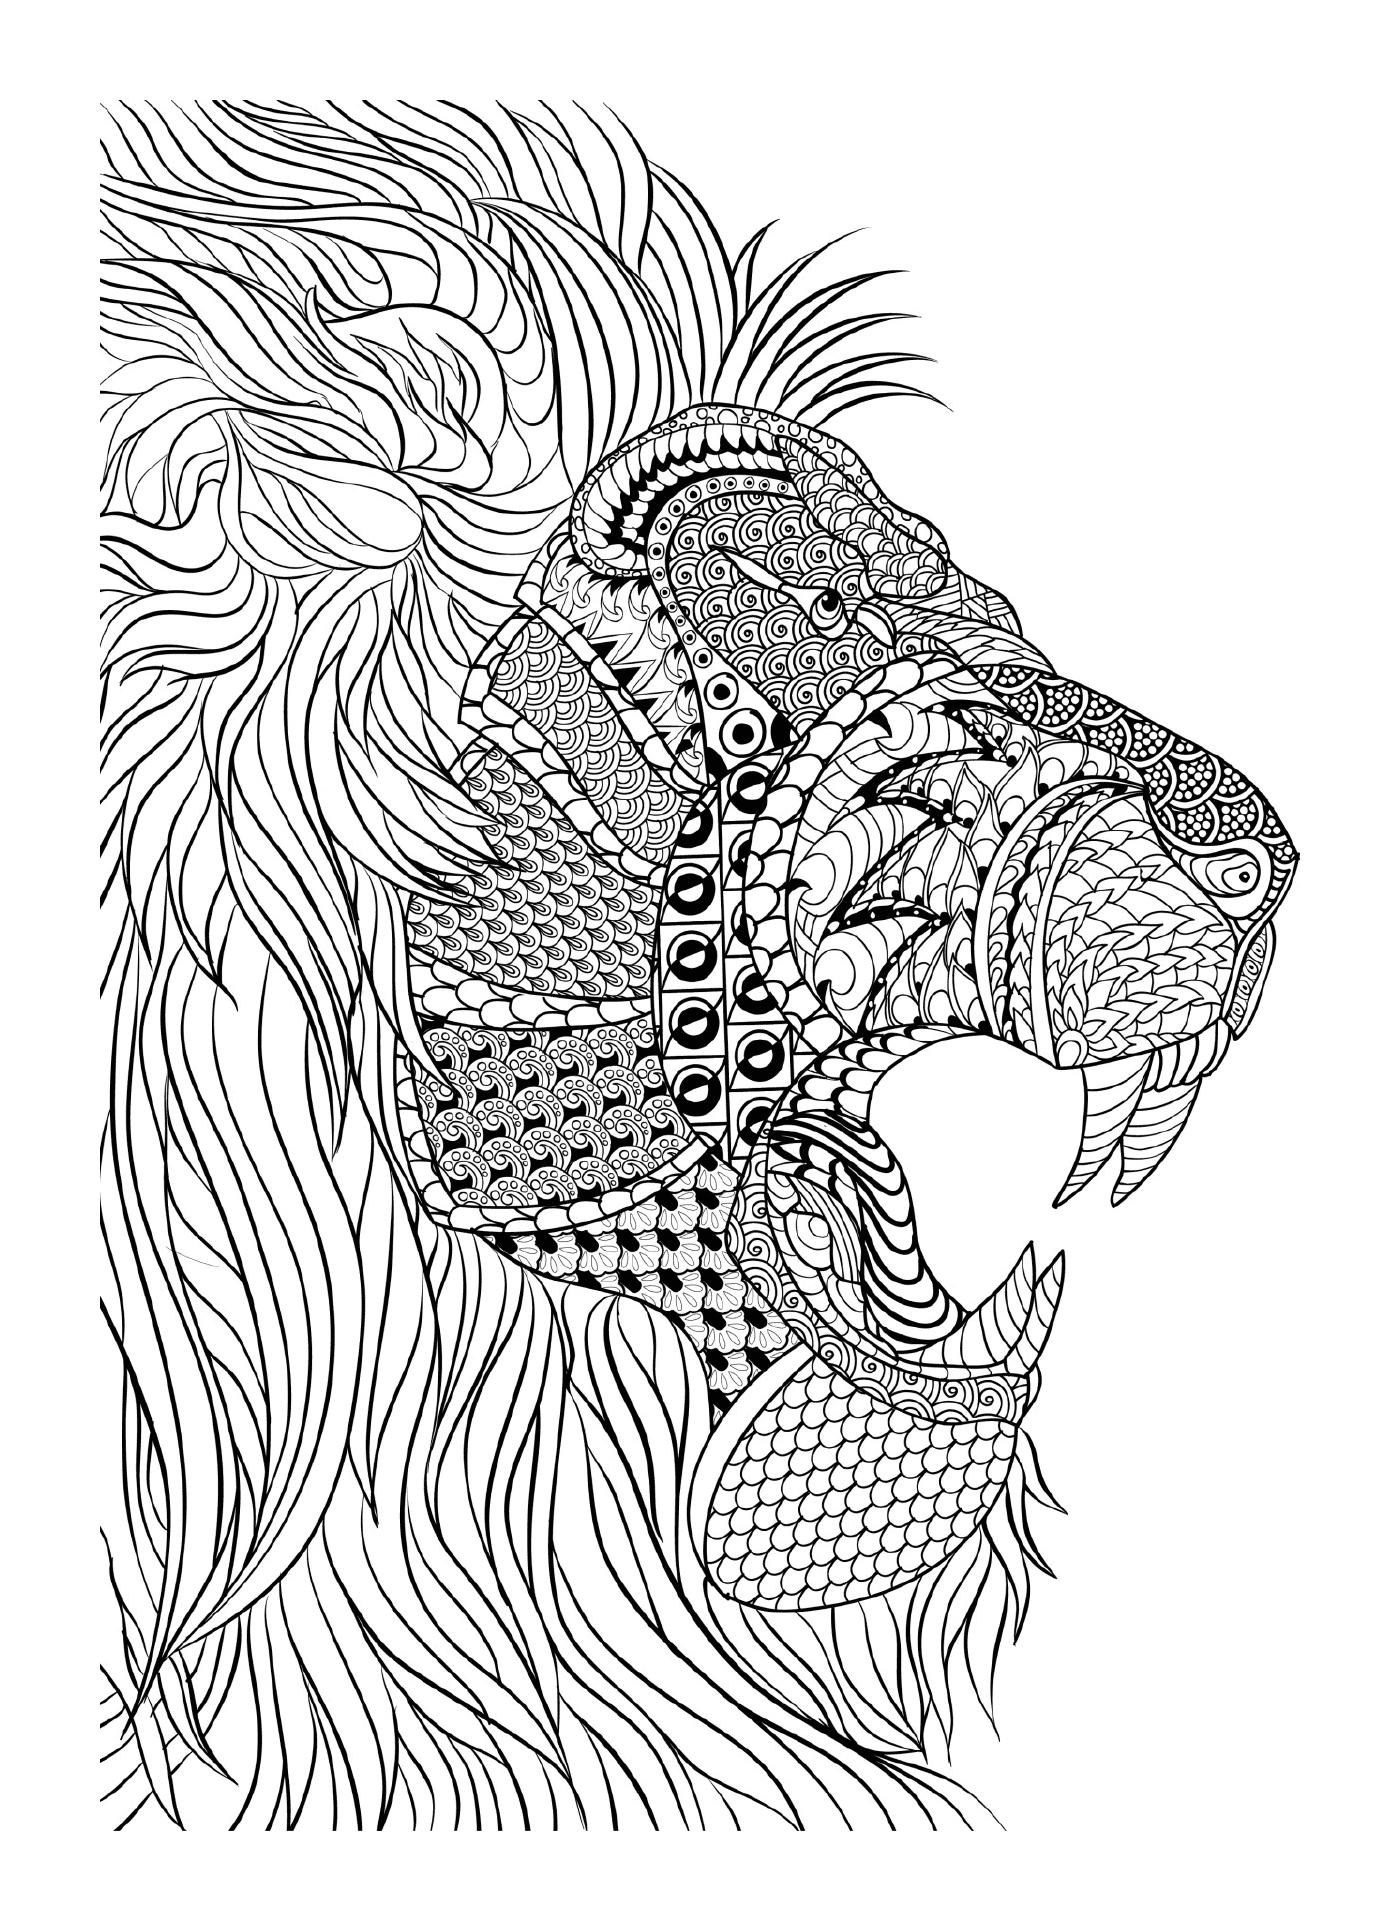   Un lion 